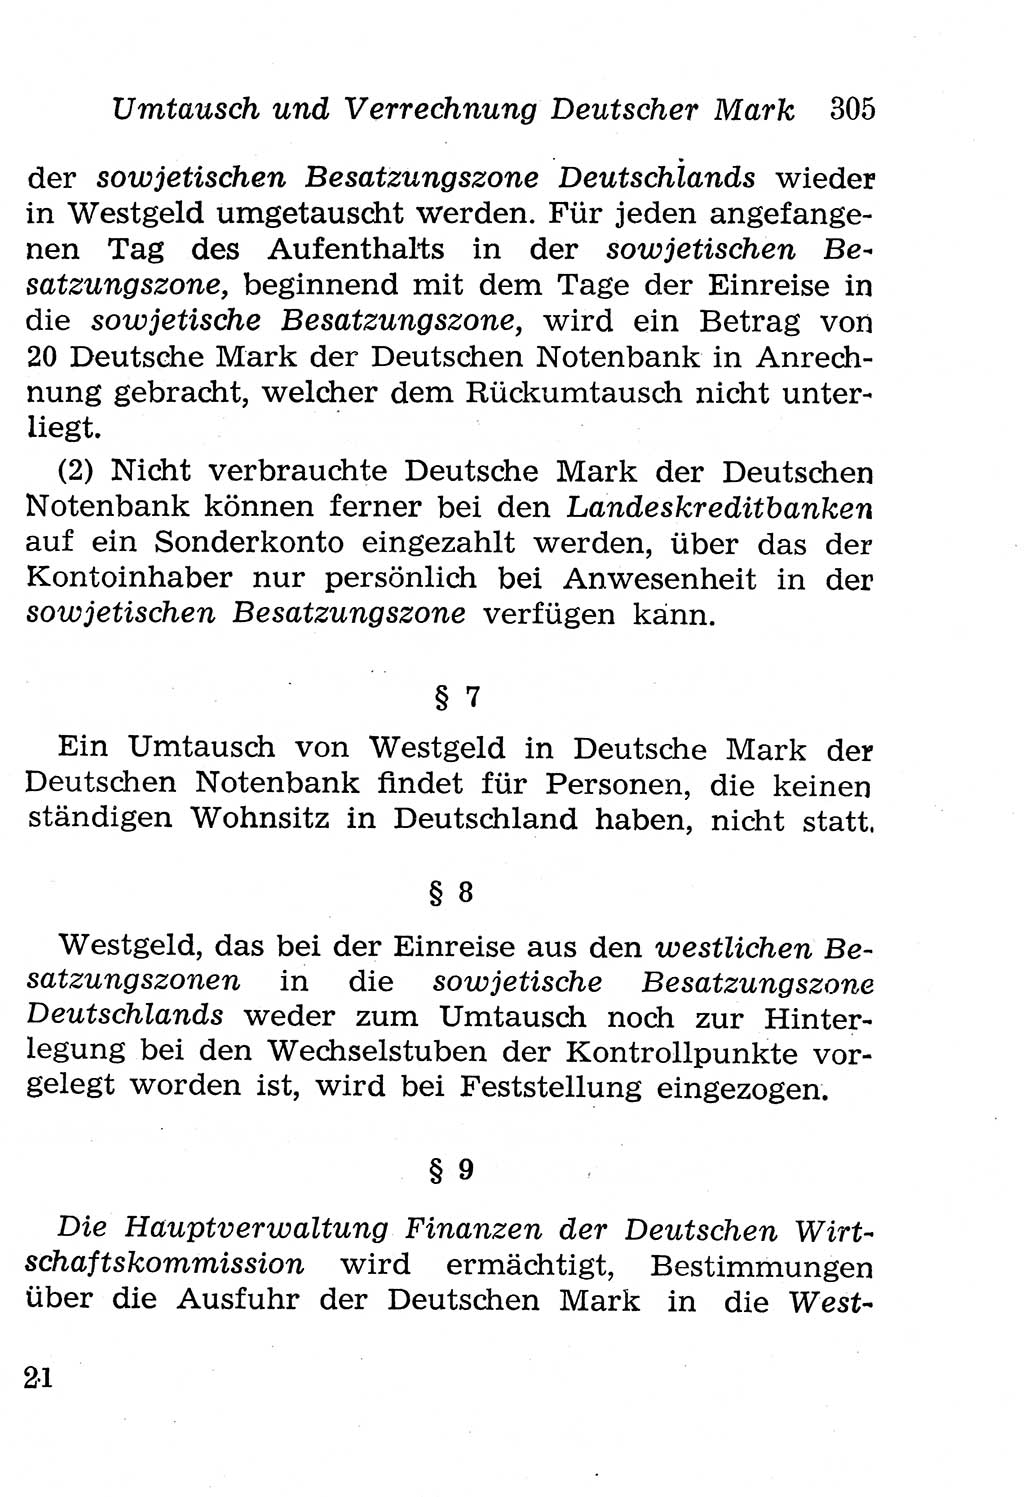 Strafgesetzbuch (StGB) und andere Strafgesetze [Deutsche Demokratische Republik (DDR)] 1958, Seite 305 (StGB Strafges. DDR 1958, S. 305)